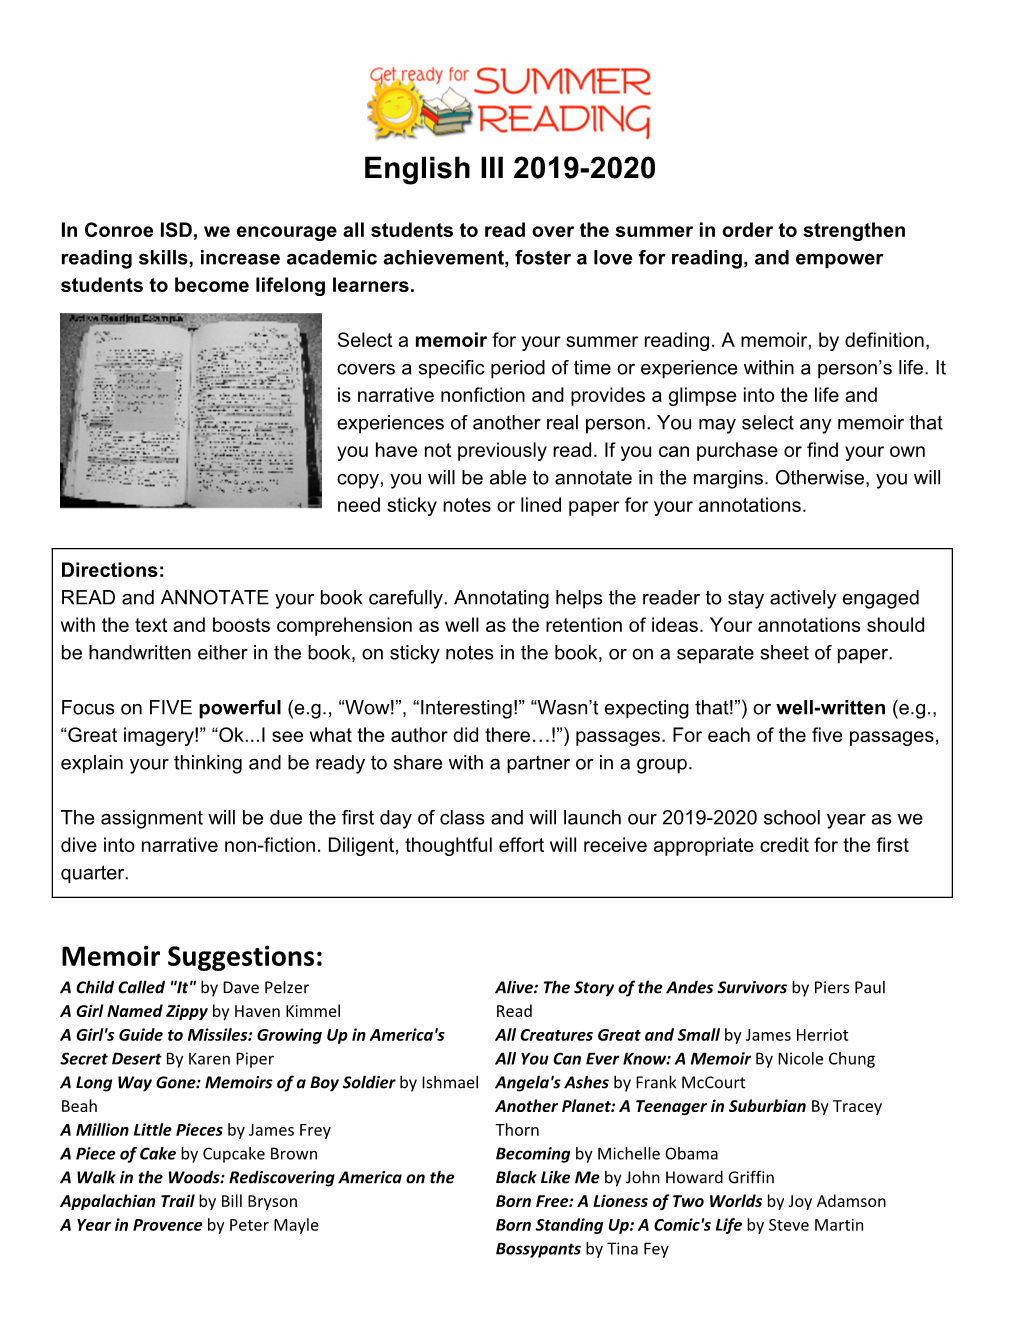 English III 2019-2020 Memoir Suggestions